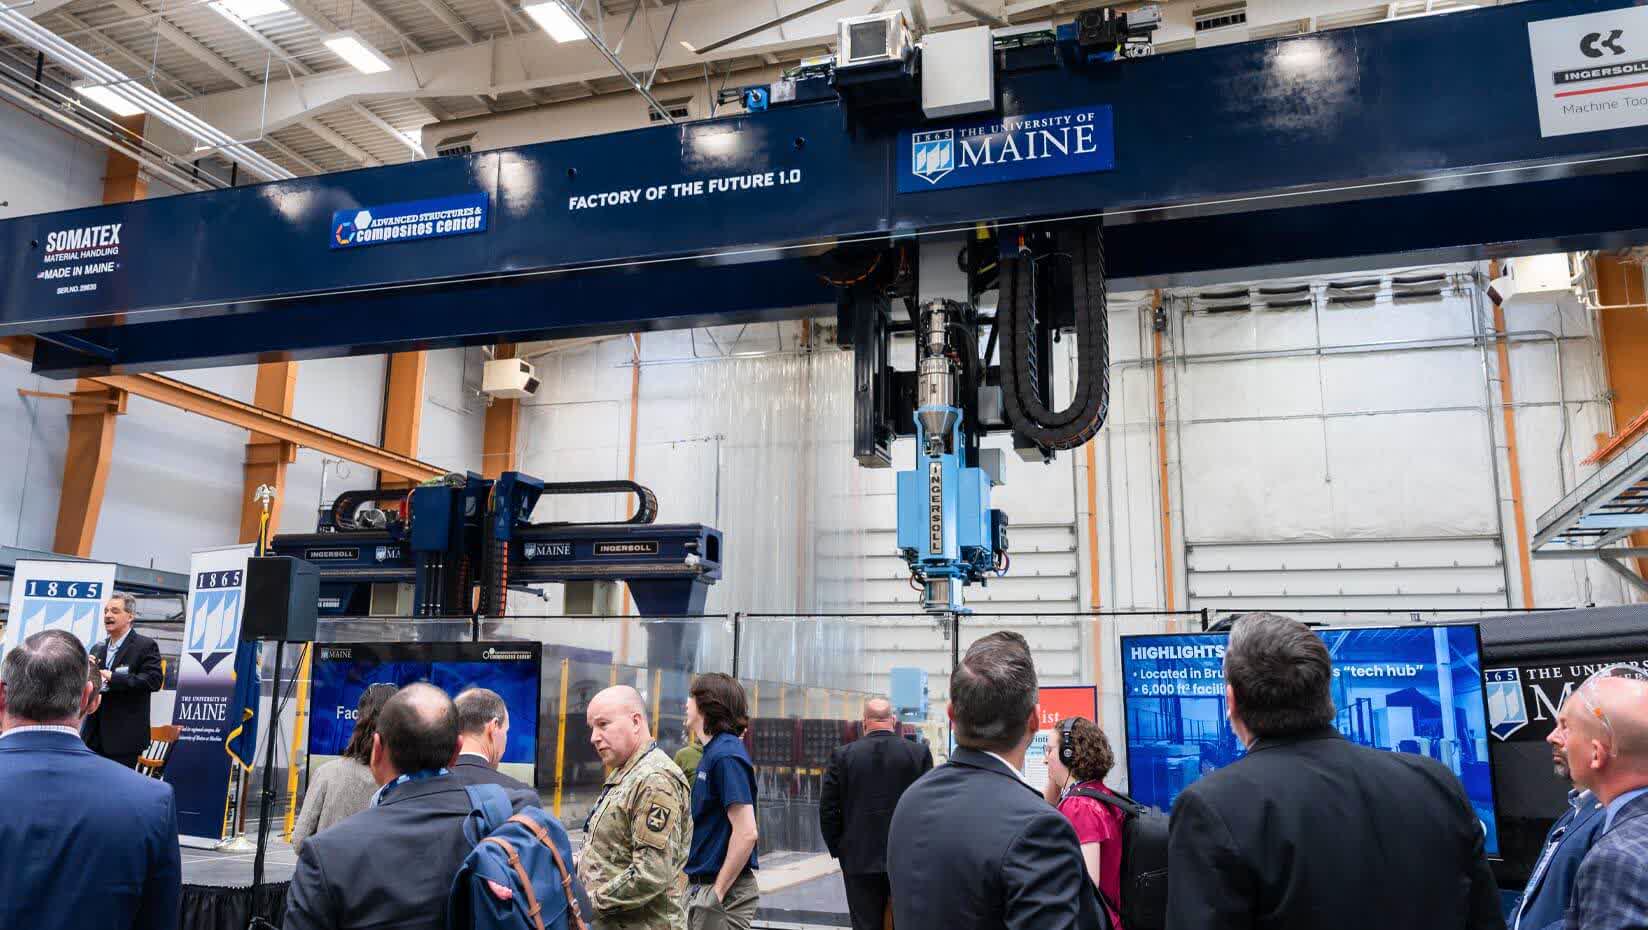 La Universidad de Maine bate su propio récord con la impresora 3D más grande del mundo